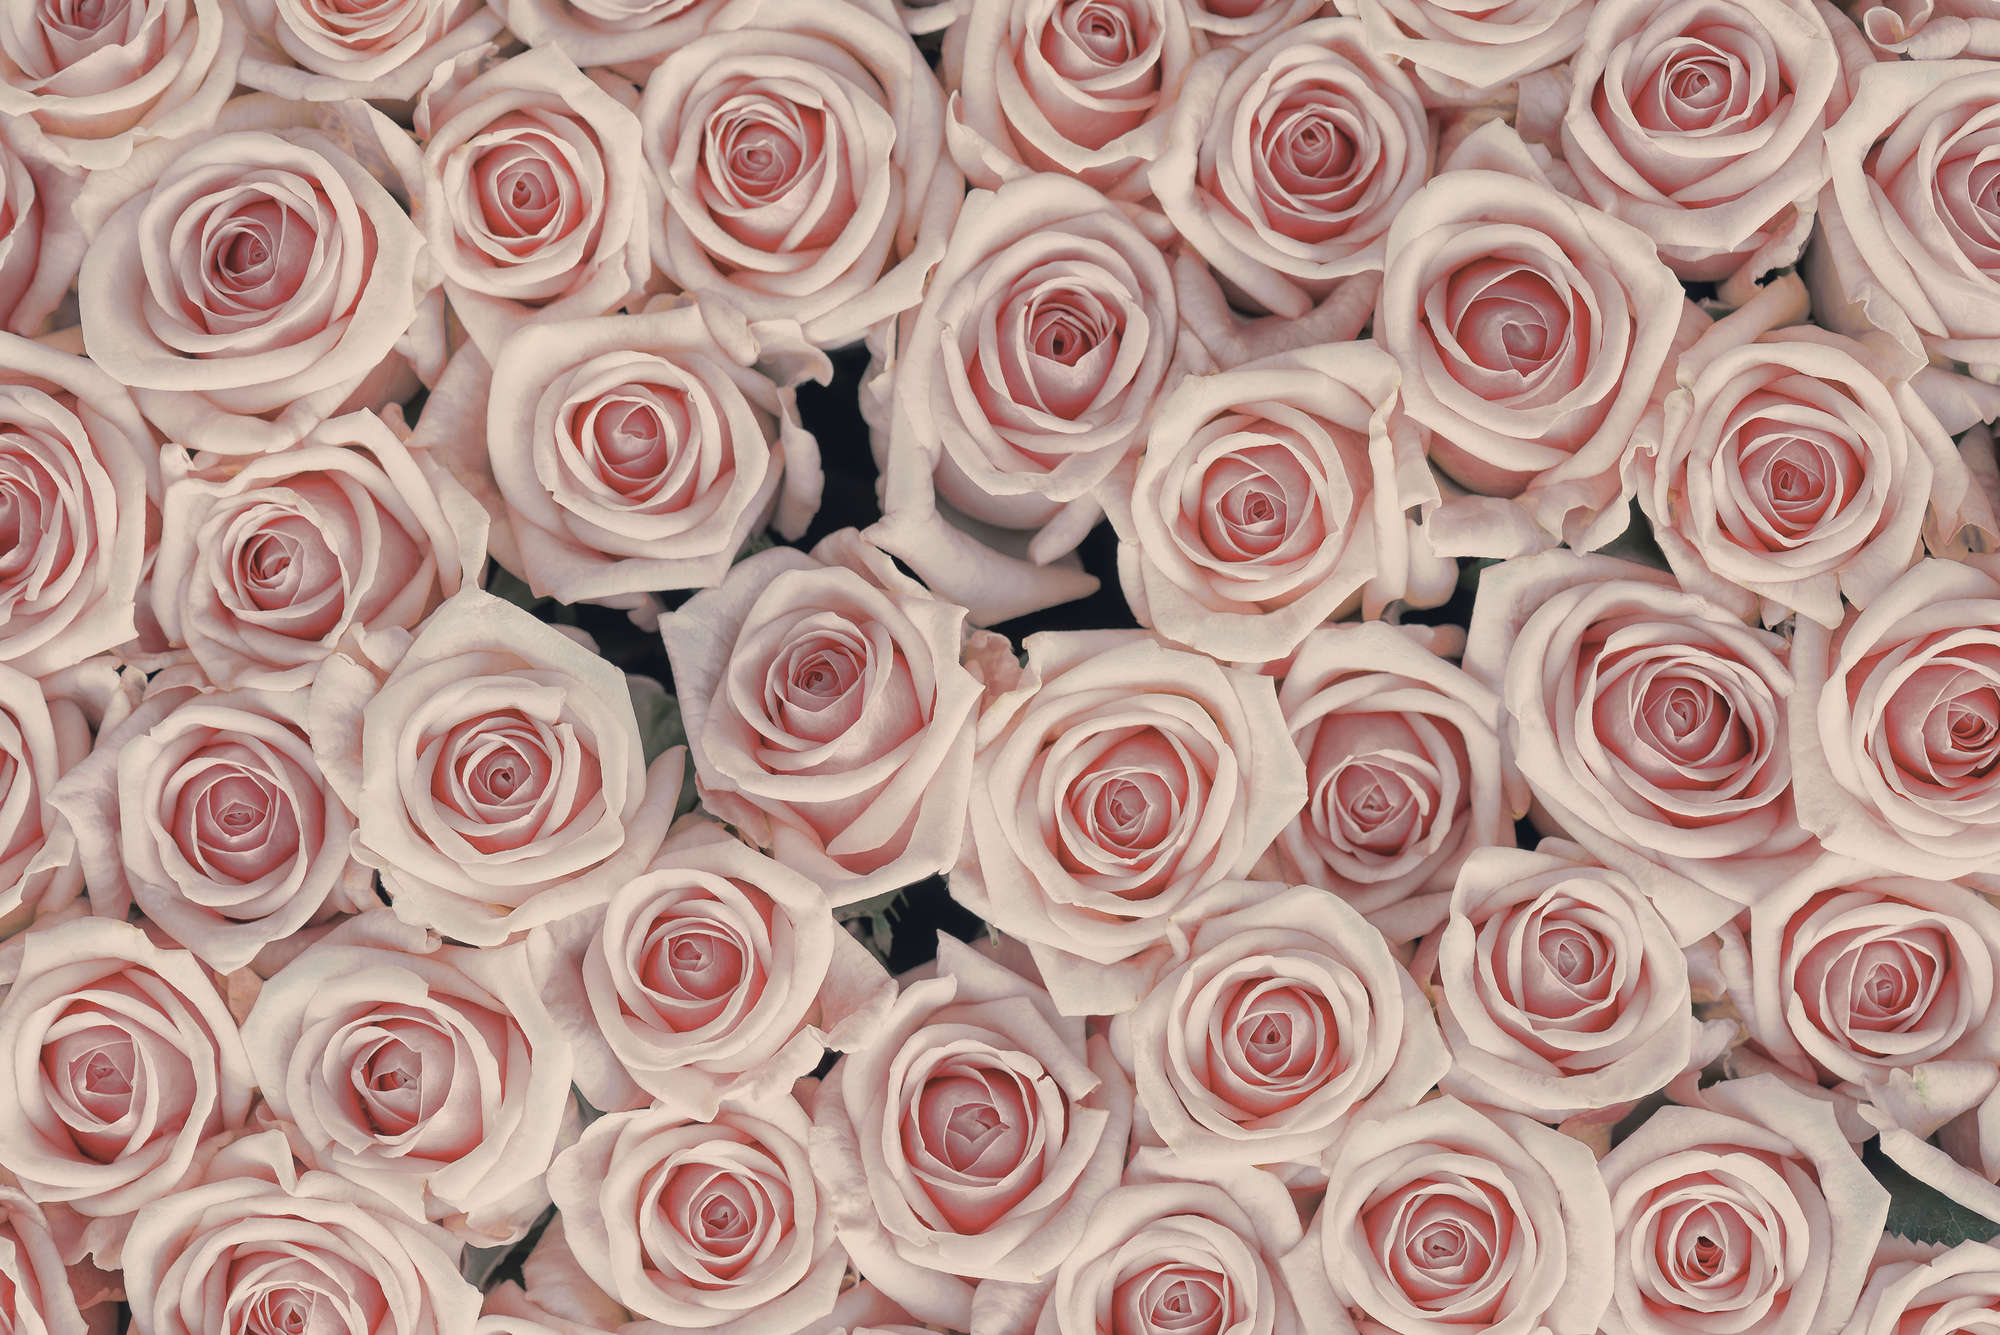             Papel pintado de plantas Rosas rosas y blancas sobre vellón liso de primera calidad
        